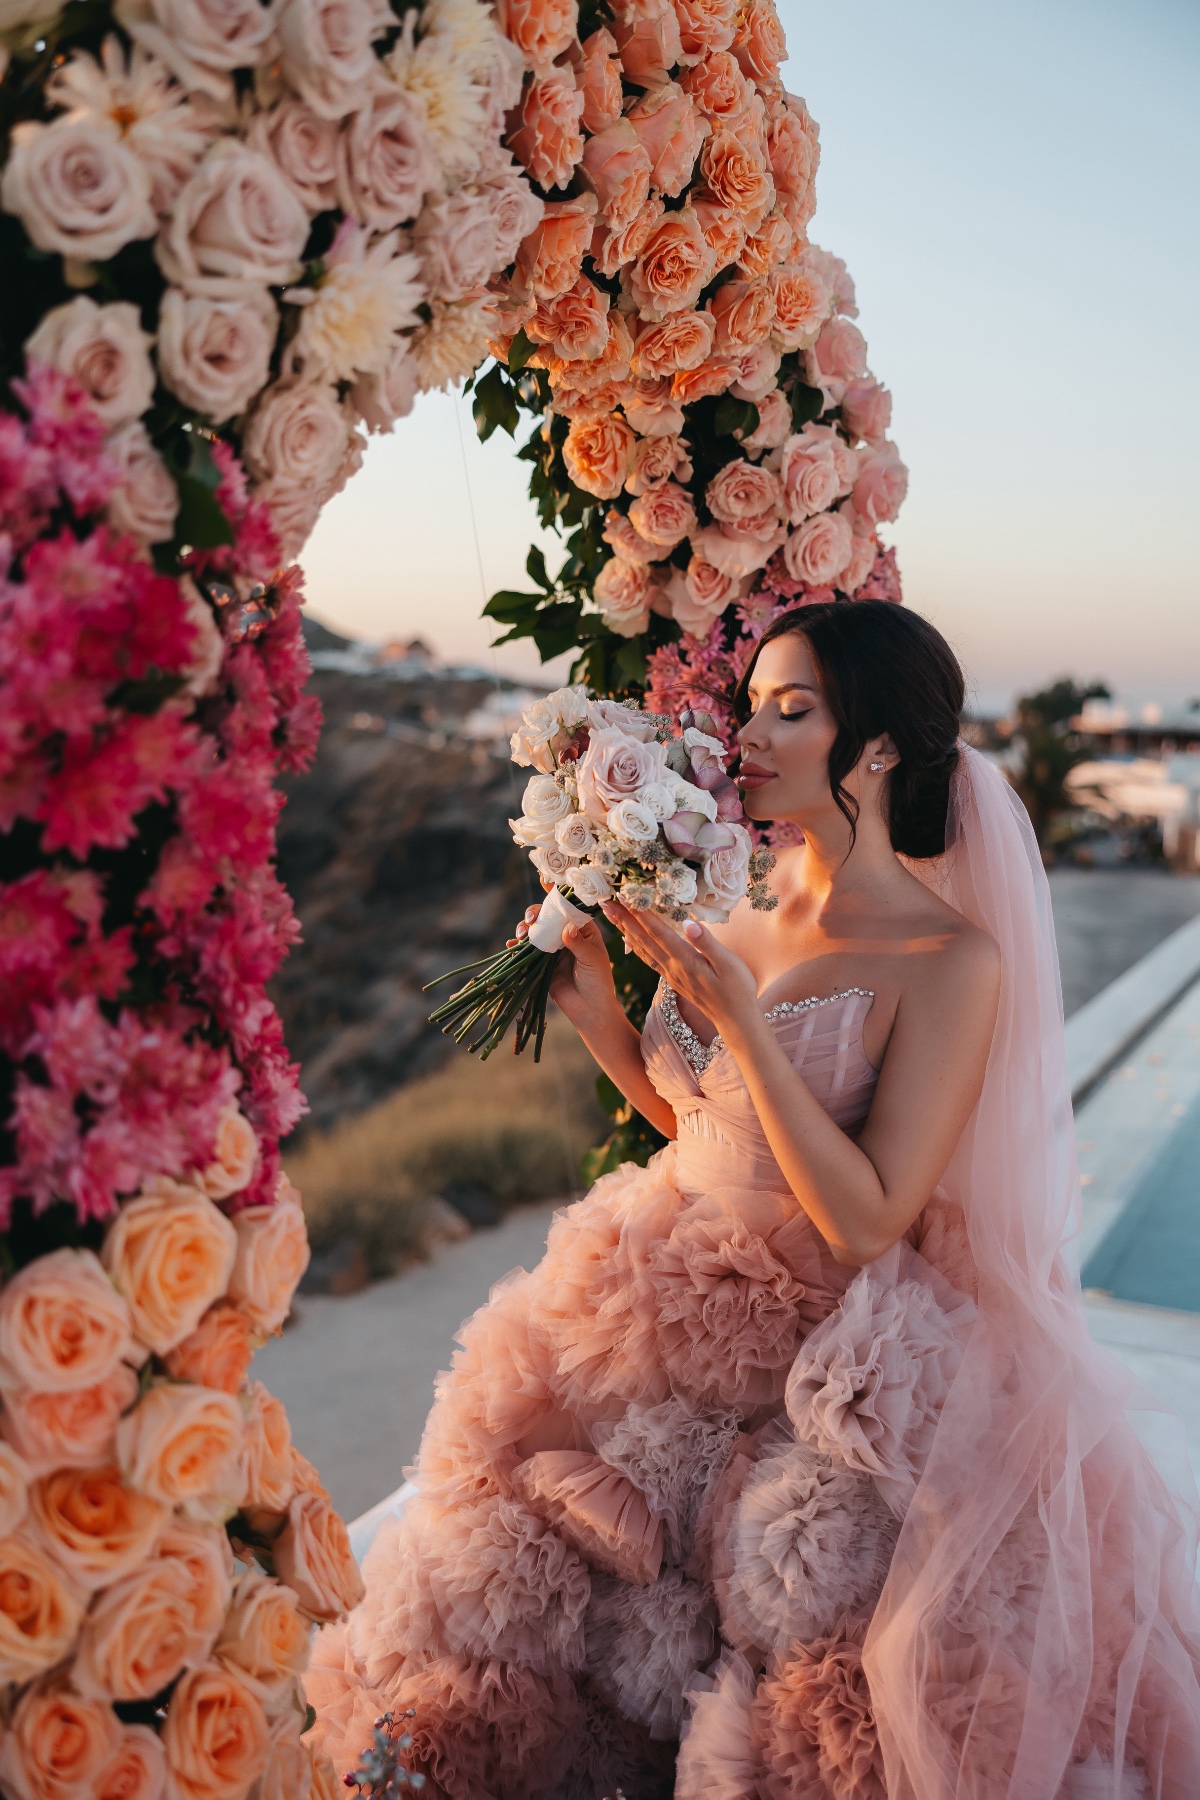 Floral designer pink bride with flowers